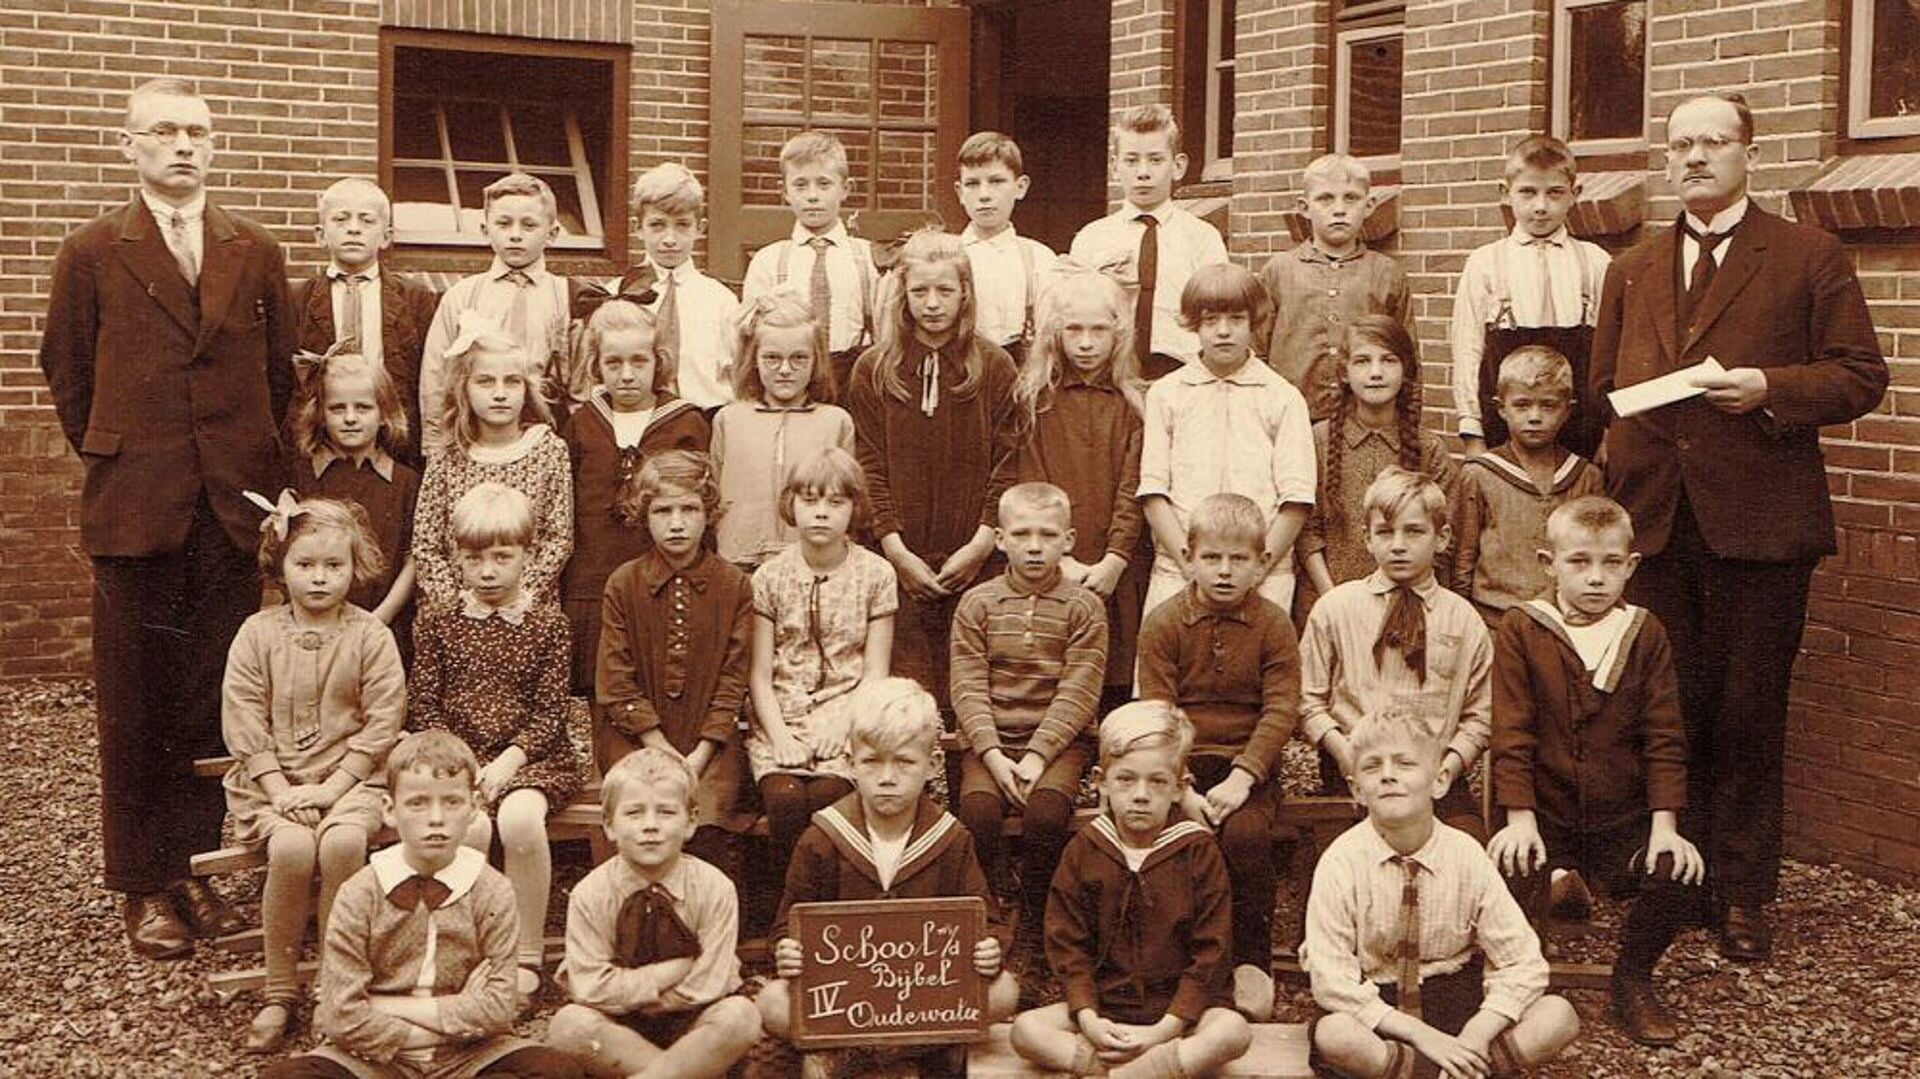 School met den Bijbel Oudewater, 1934 klas 4.Geheel links de latere prof. dr. J. van Hulst die tijdens de oorlogsjaren ongeveer 500 Joodse kinderen zou redden.